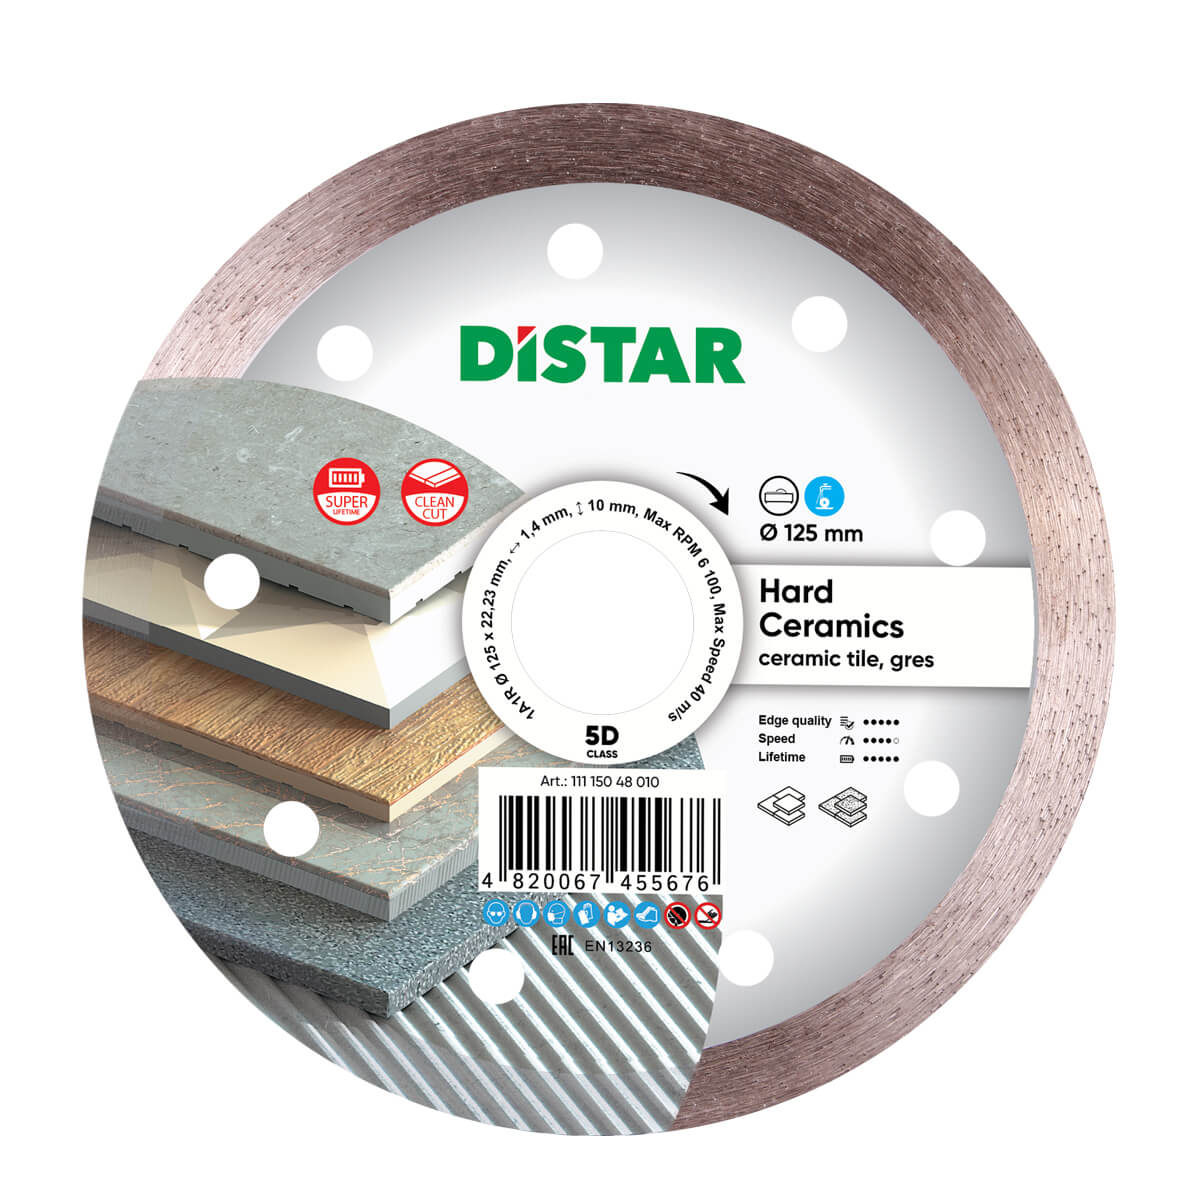 Диск алмазный отрезной по керамограниту и керамике для УШМ Distar 125 мм Hard ceramics 5D диск алмазный по керамограниту distar 7d 11320061019 250x25 4x1 8 мм сплошной мокрый рез